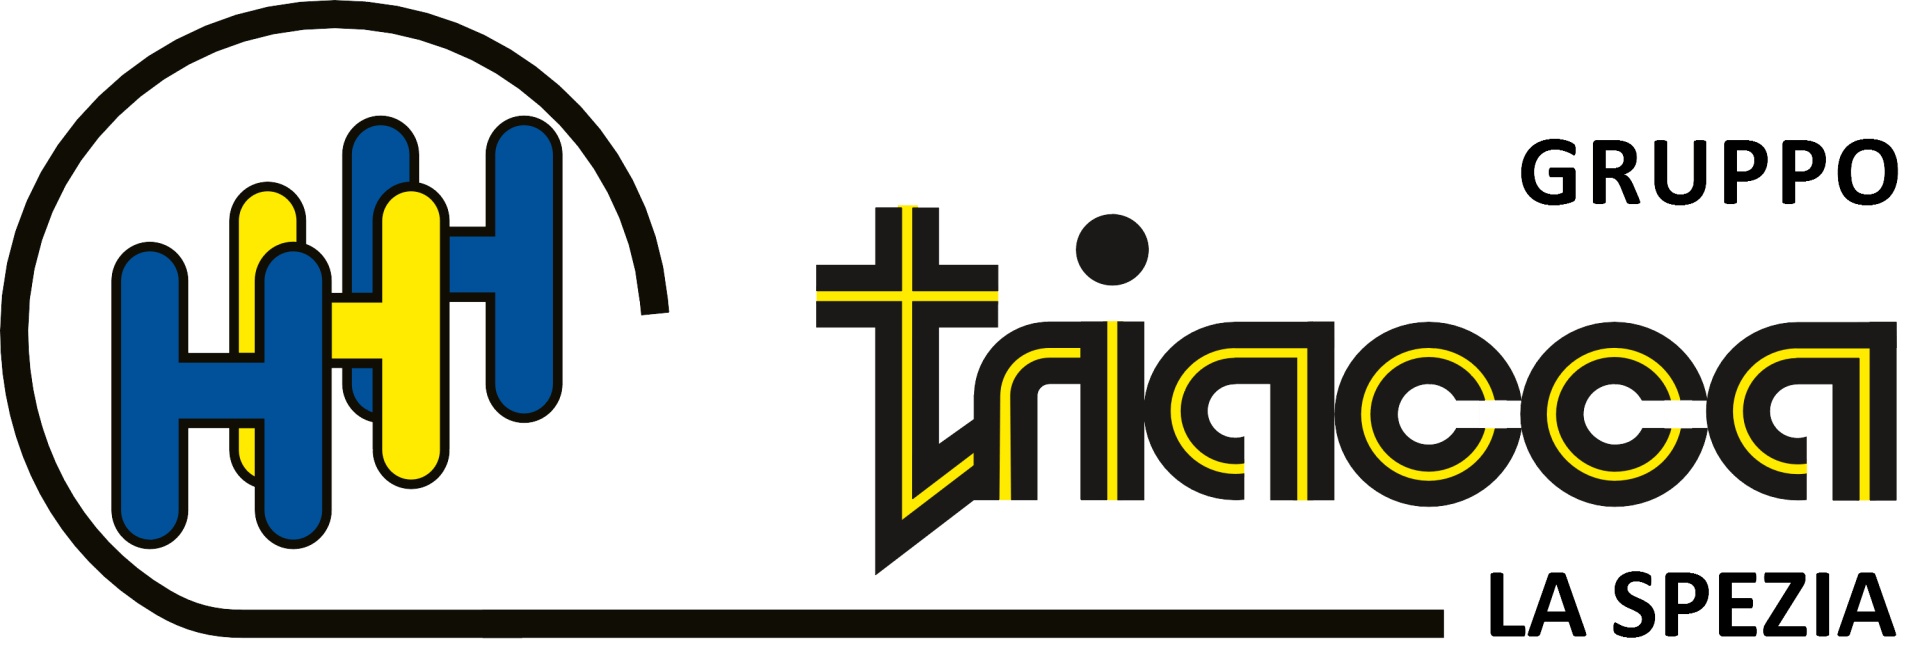 TRIACCA TRASPORTI-logo